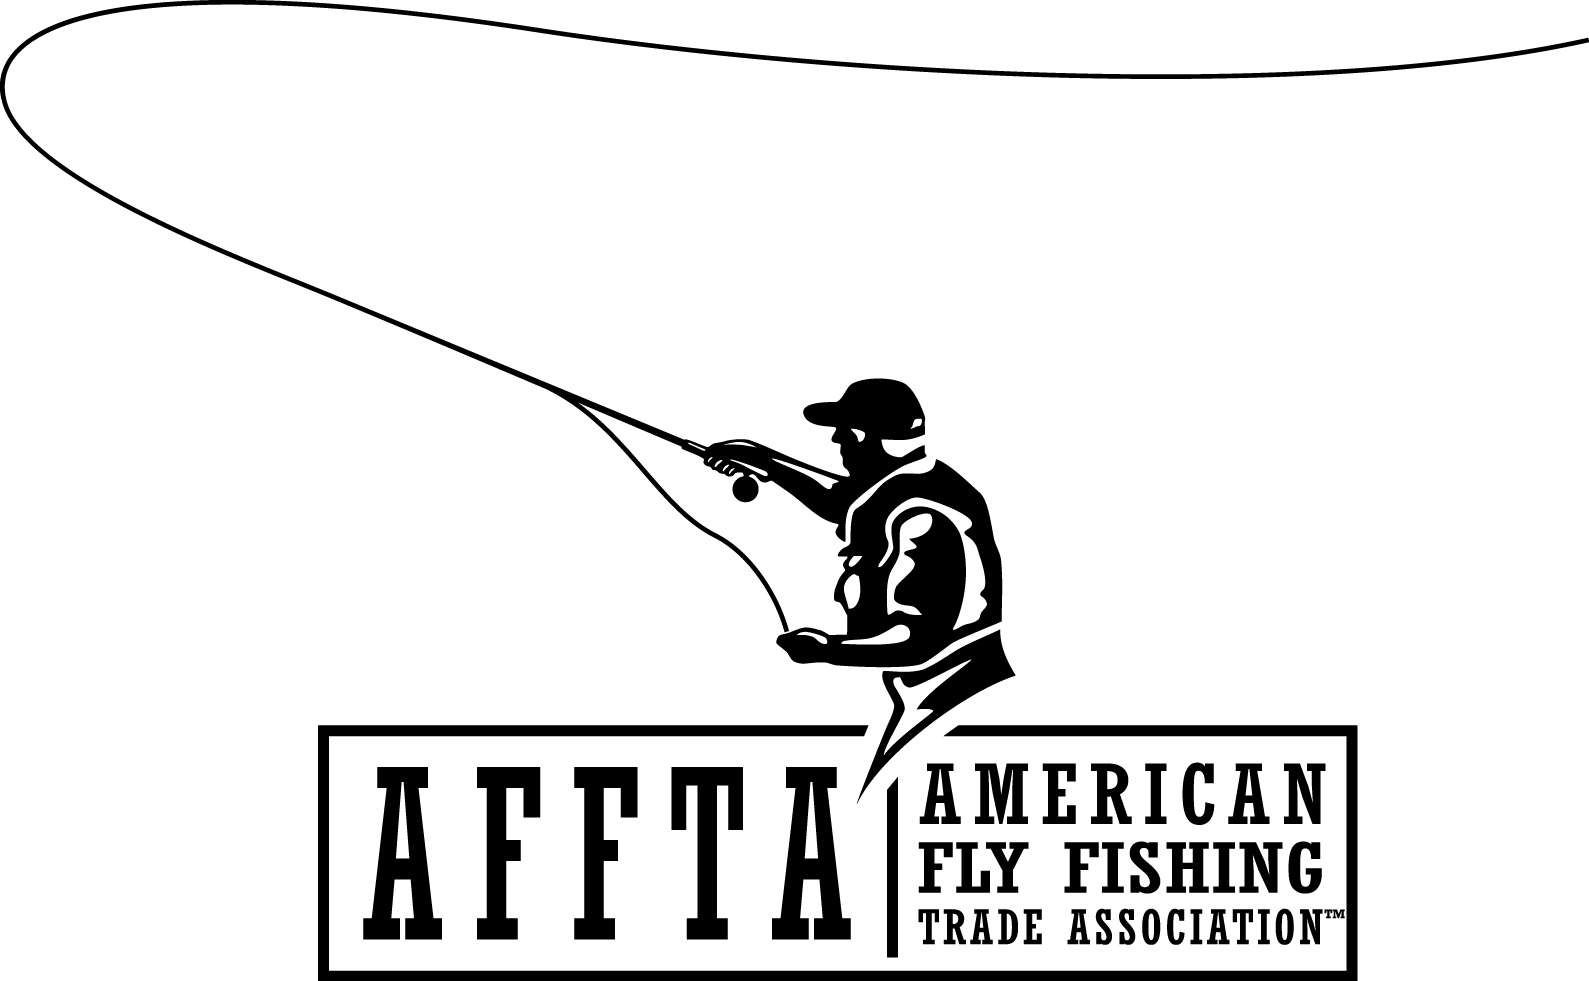 News: AFFTA